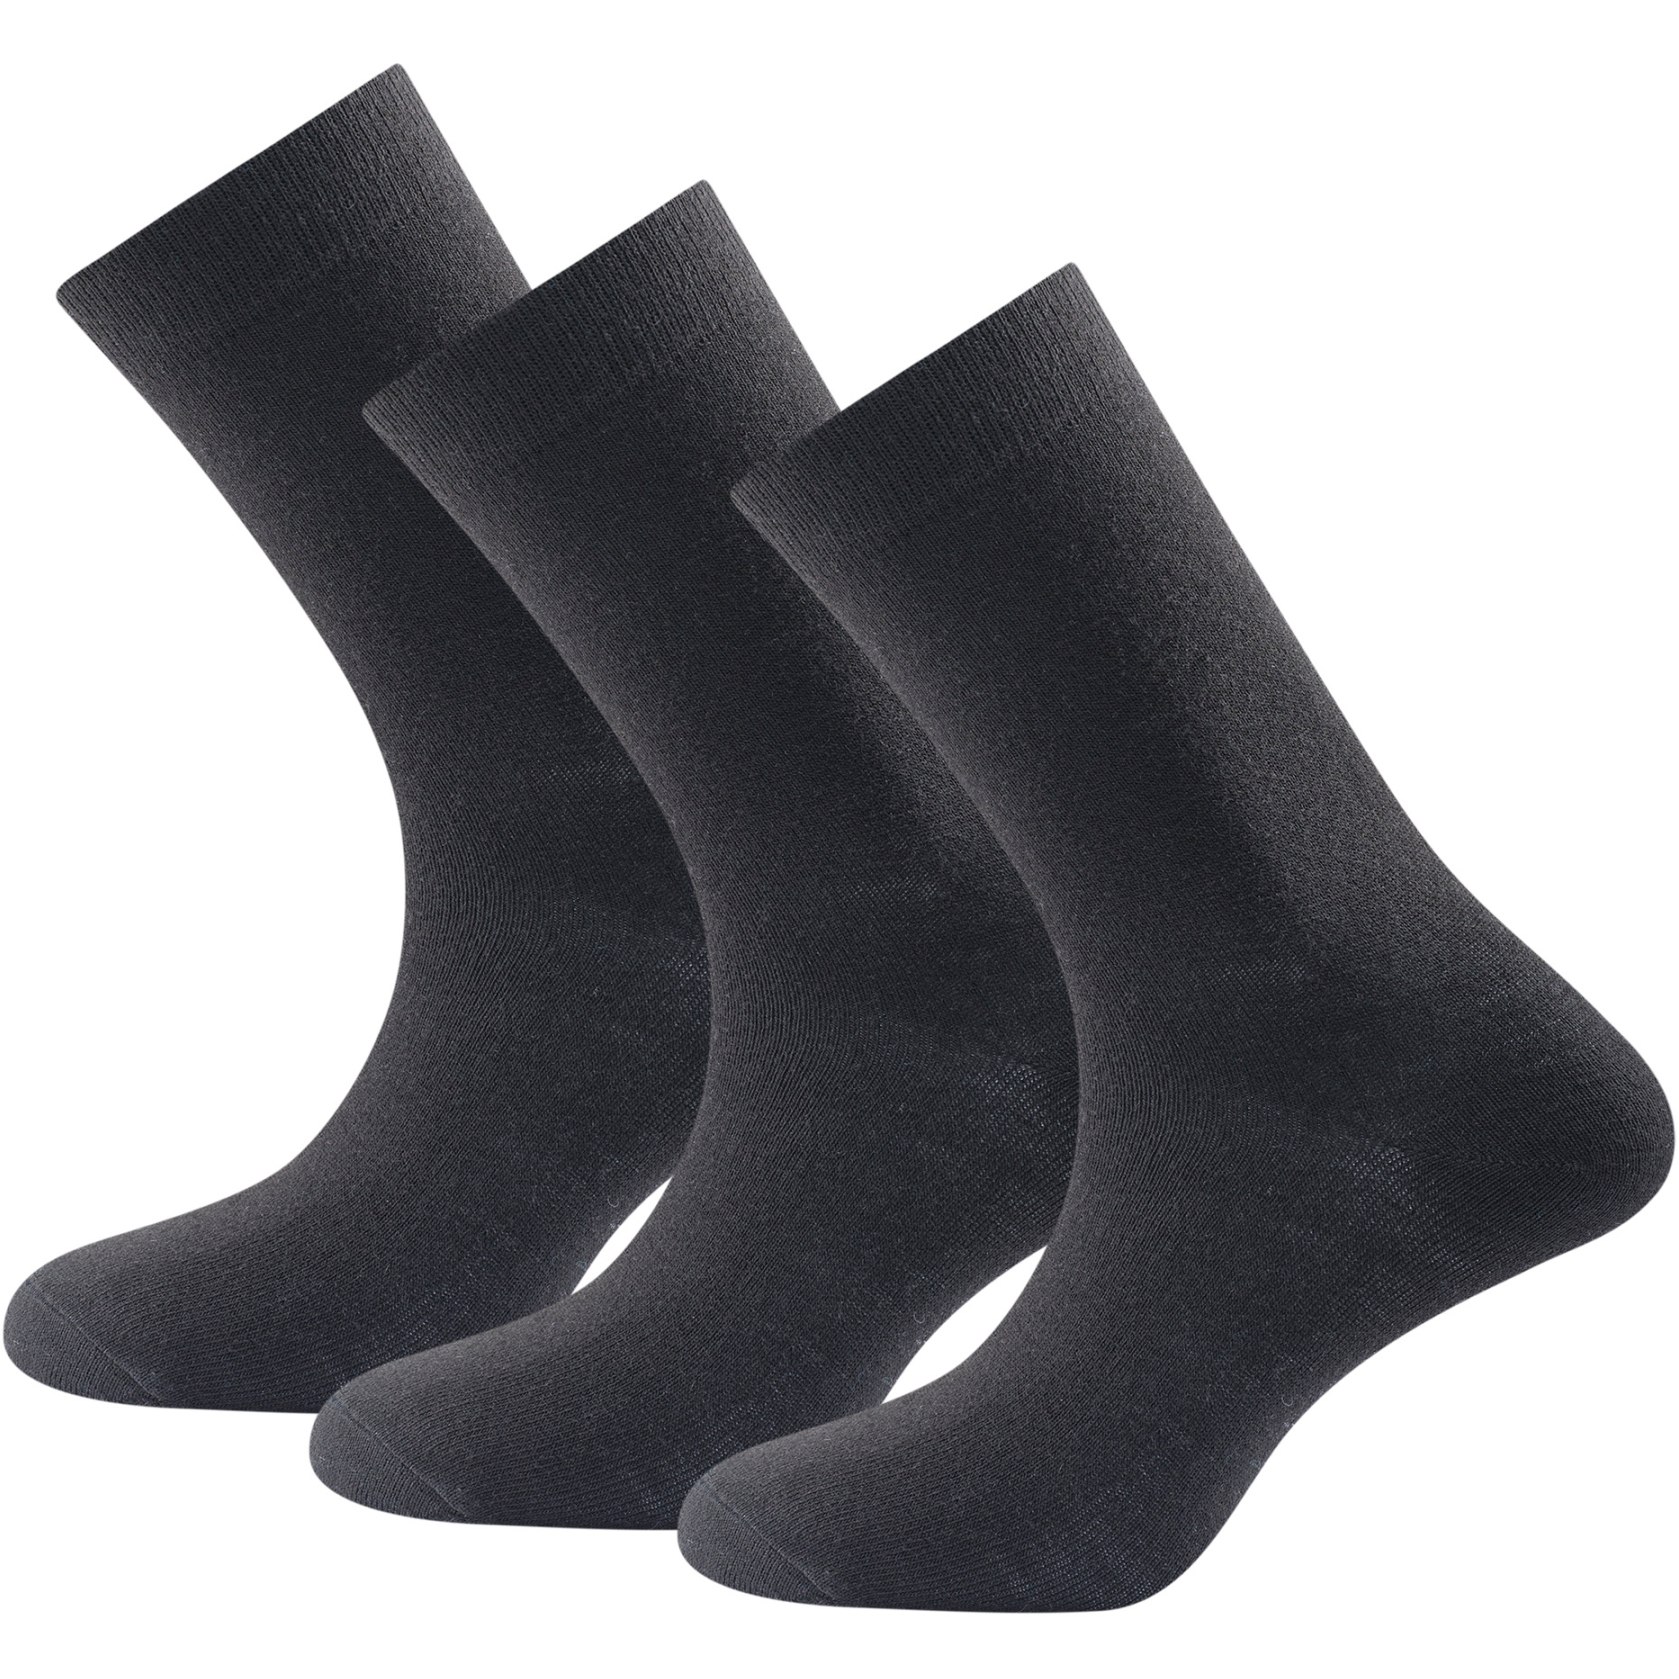 Produktbild von Devold Daily Merino Light Socken (3er-Pack) - 950A Schwarz